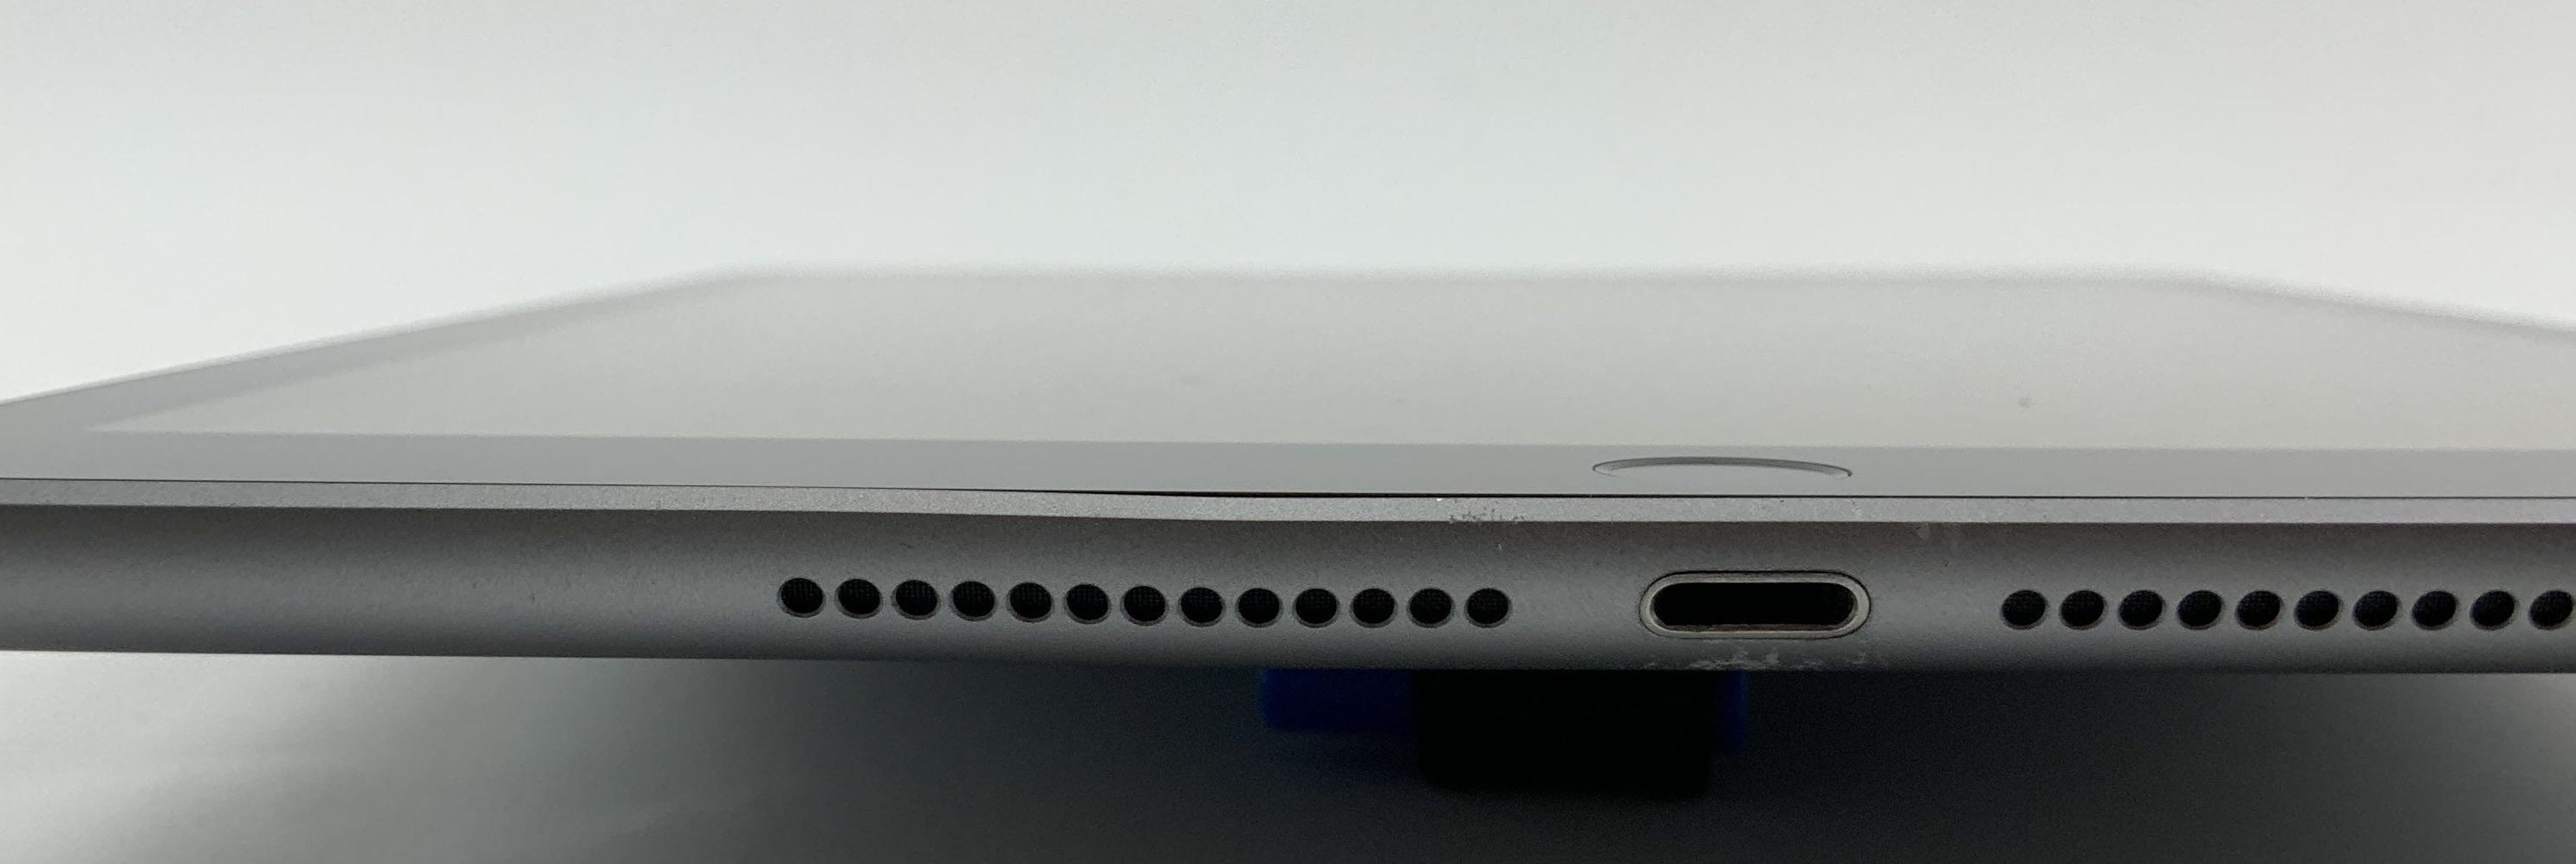 iPad 5 Wi-Fi 128GB, 128GB, Space Gray, imagen 4